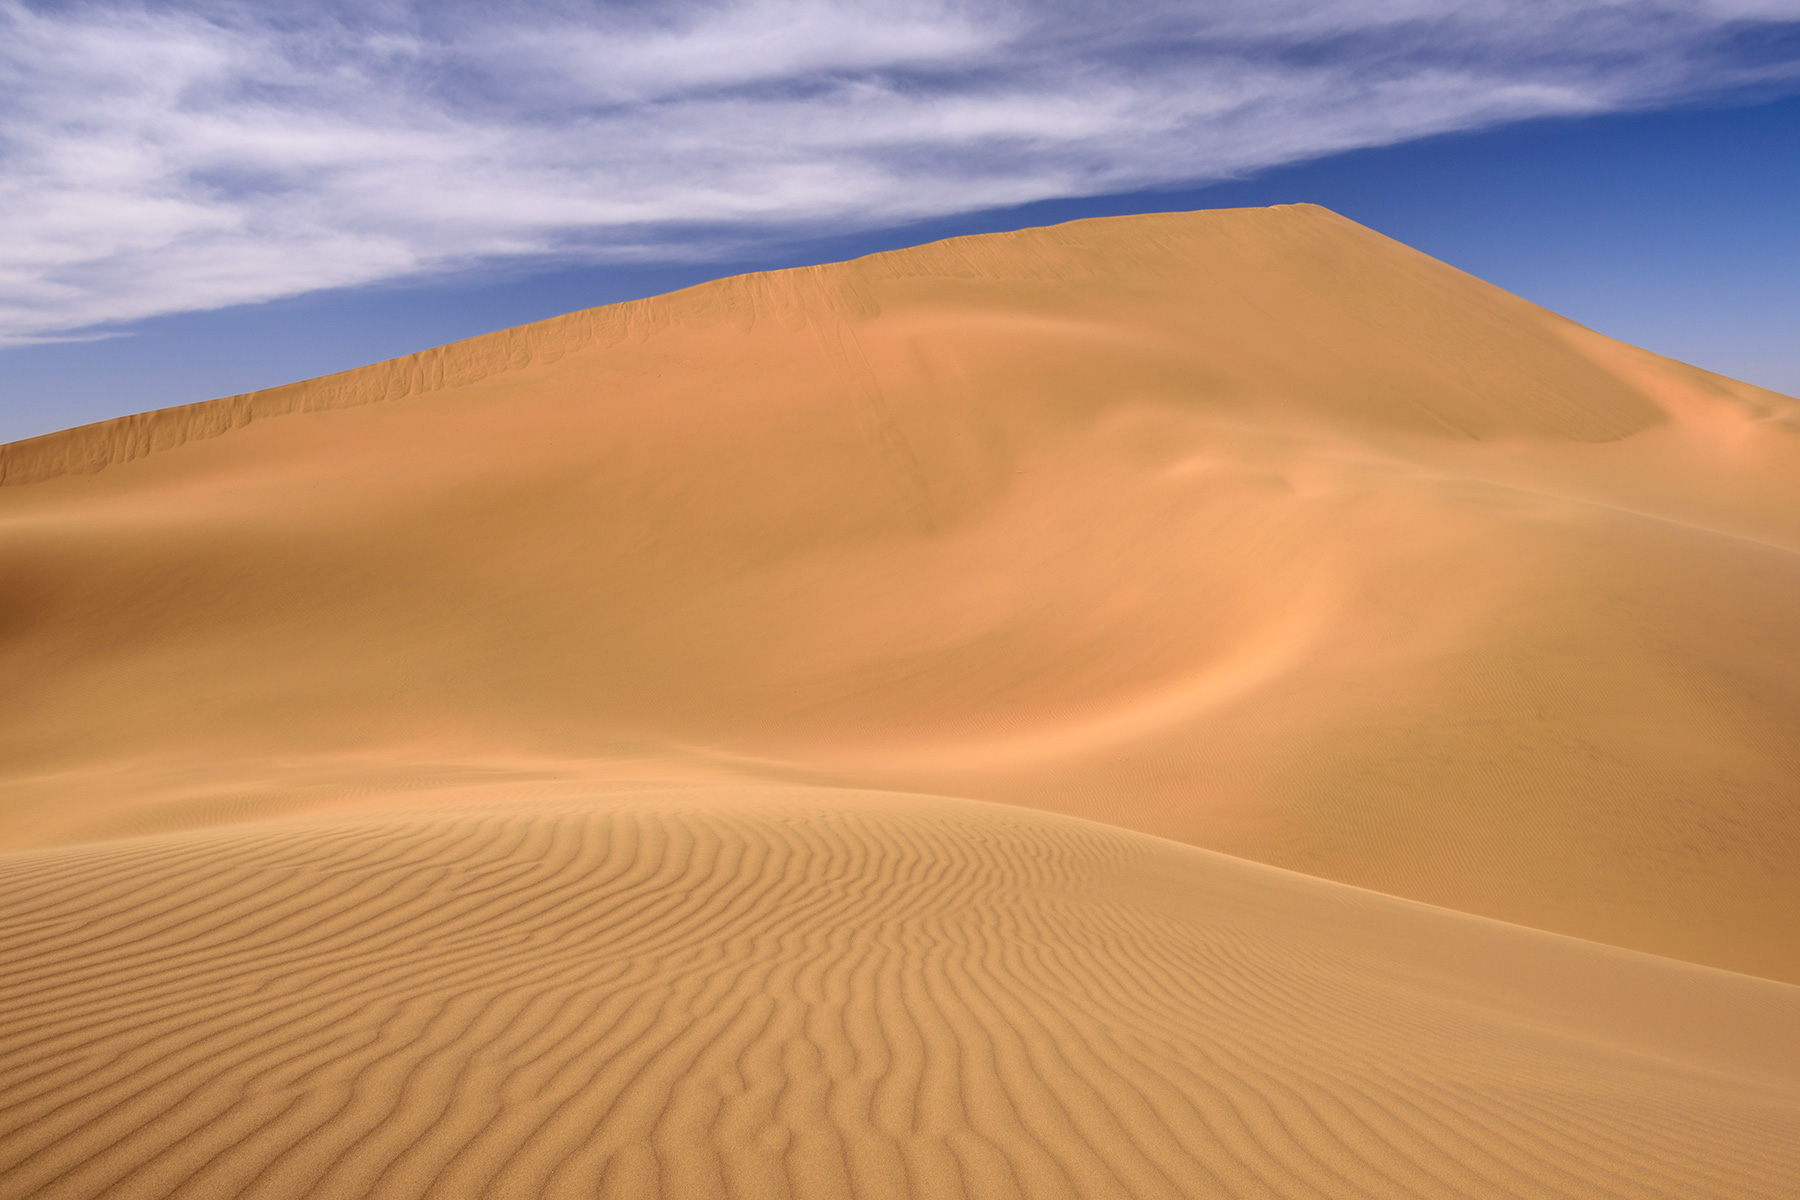 Désert du Badain Jaran (Chine, Mongolie Intérieure) - Flanc d'une dune avec rides de sable en premier plan